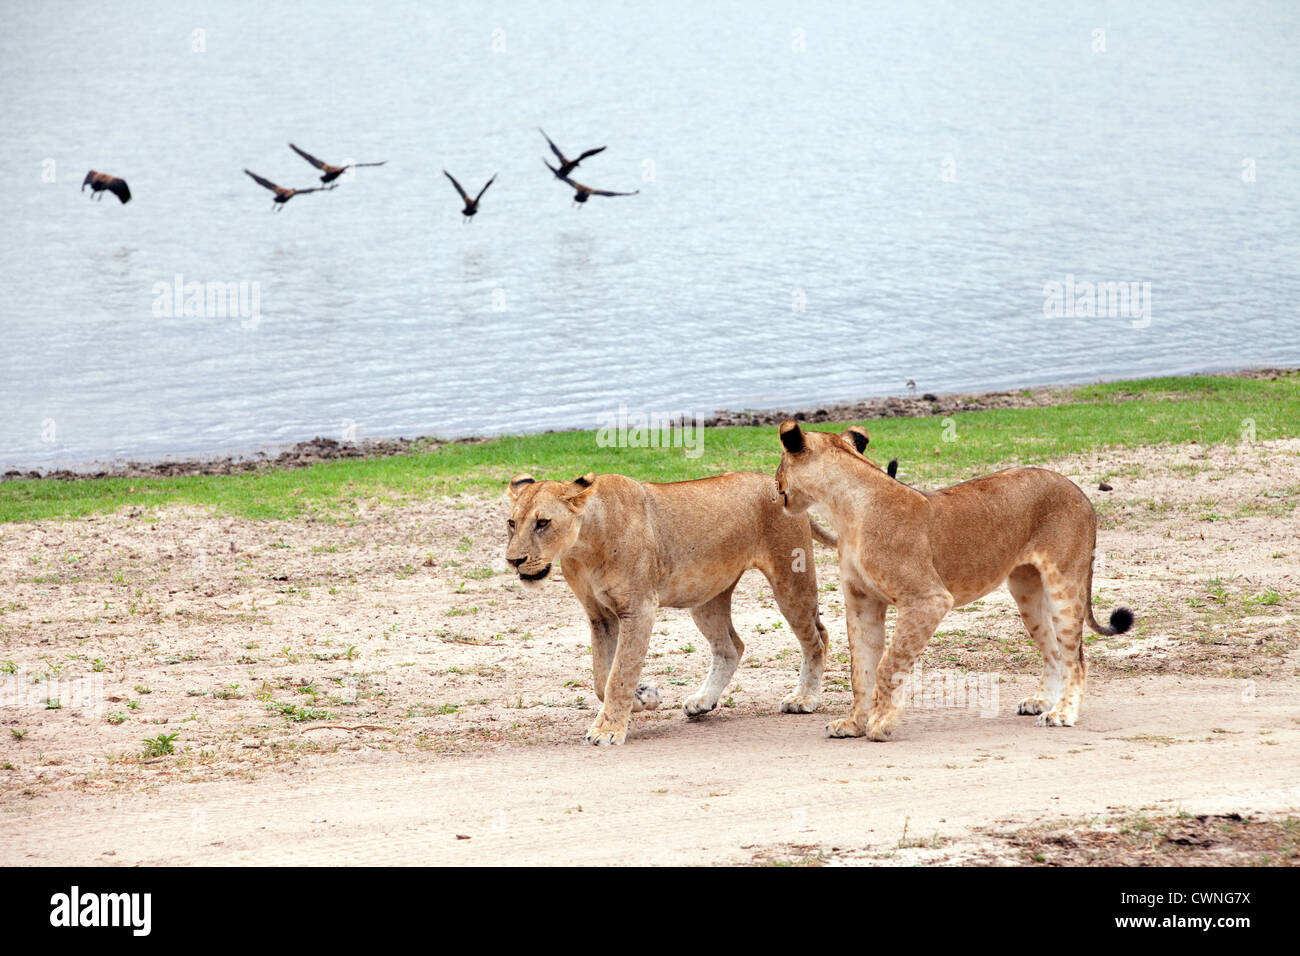 Deux lions immatures par marche Lake Manze, Selous, Tanzanie Afrique vue scène Banque D'Images